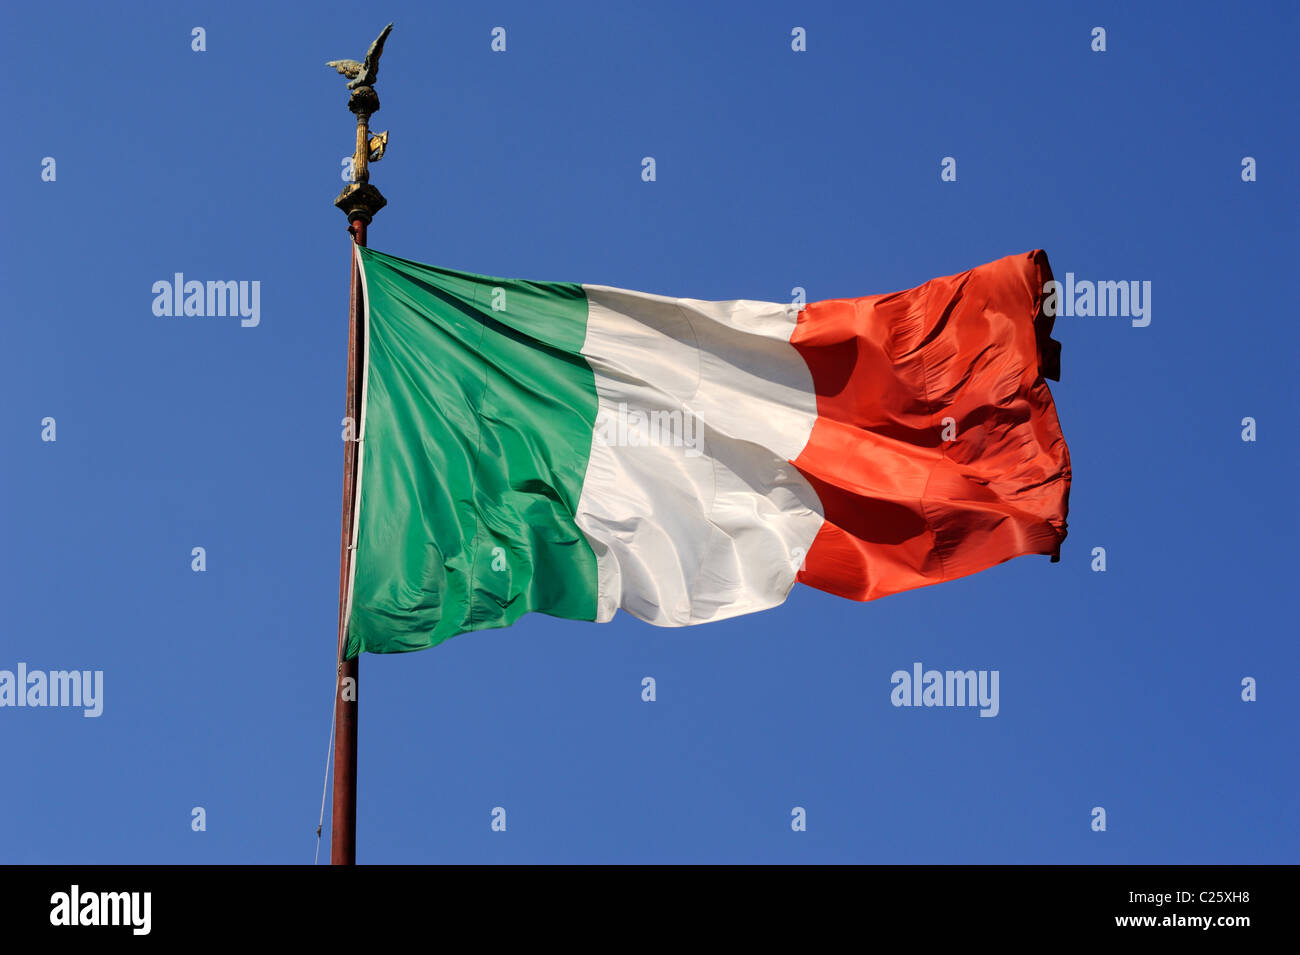 Bandiera italiana immagini e fotografie stock ad alta risoluzione - Alamy